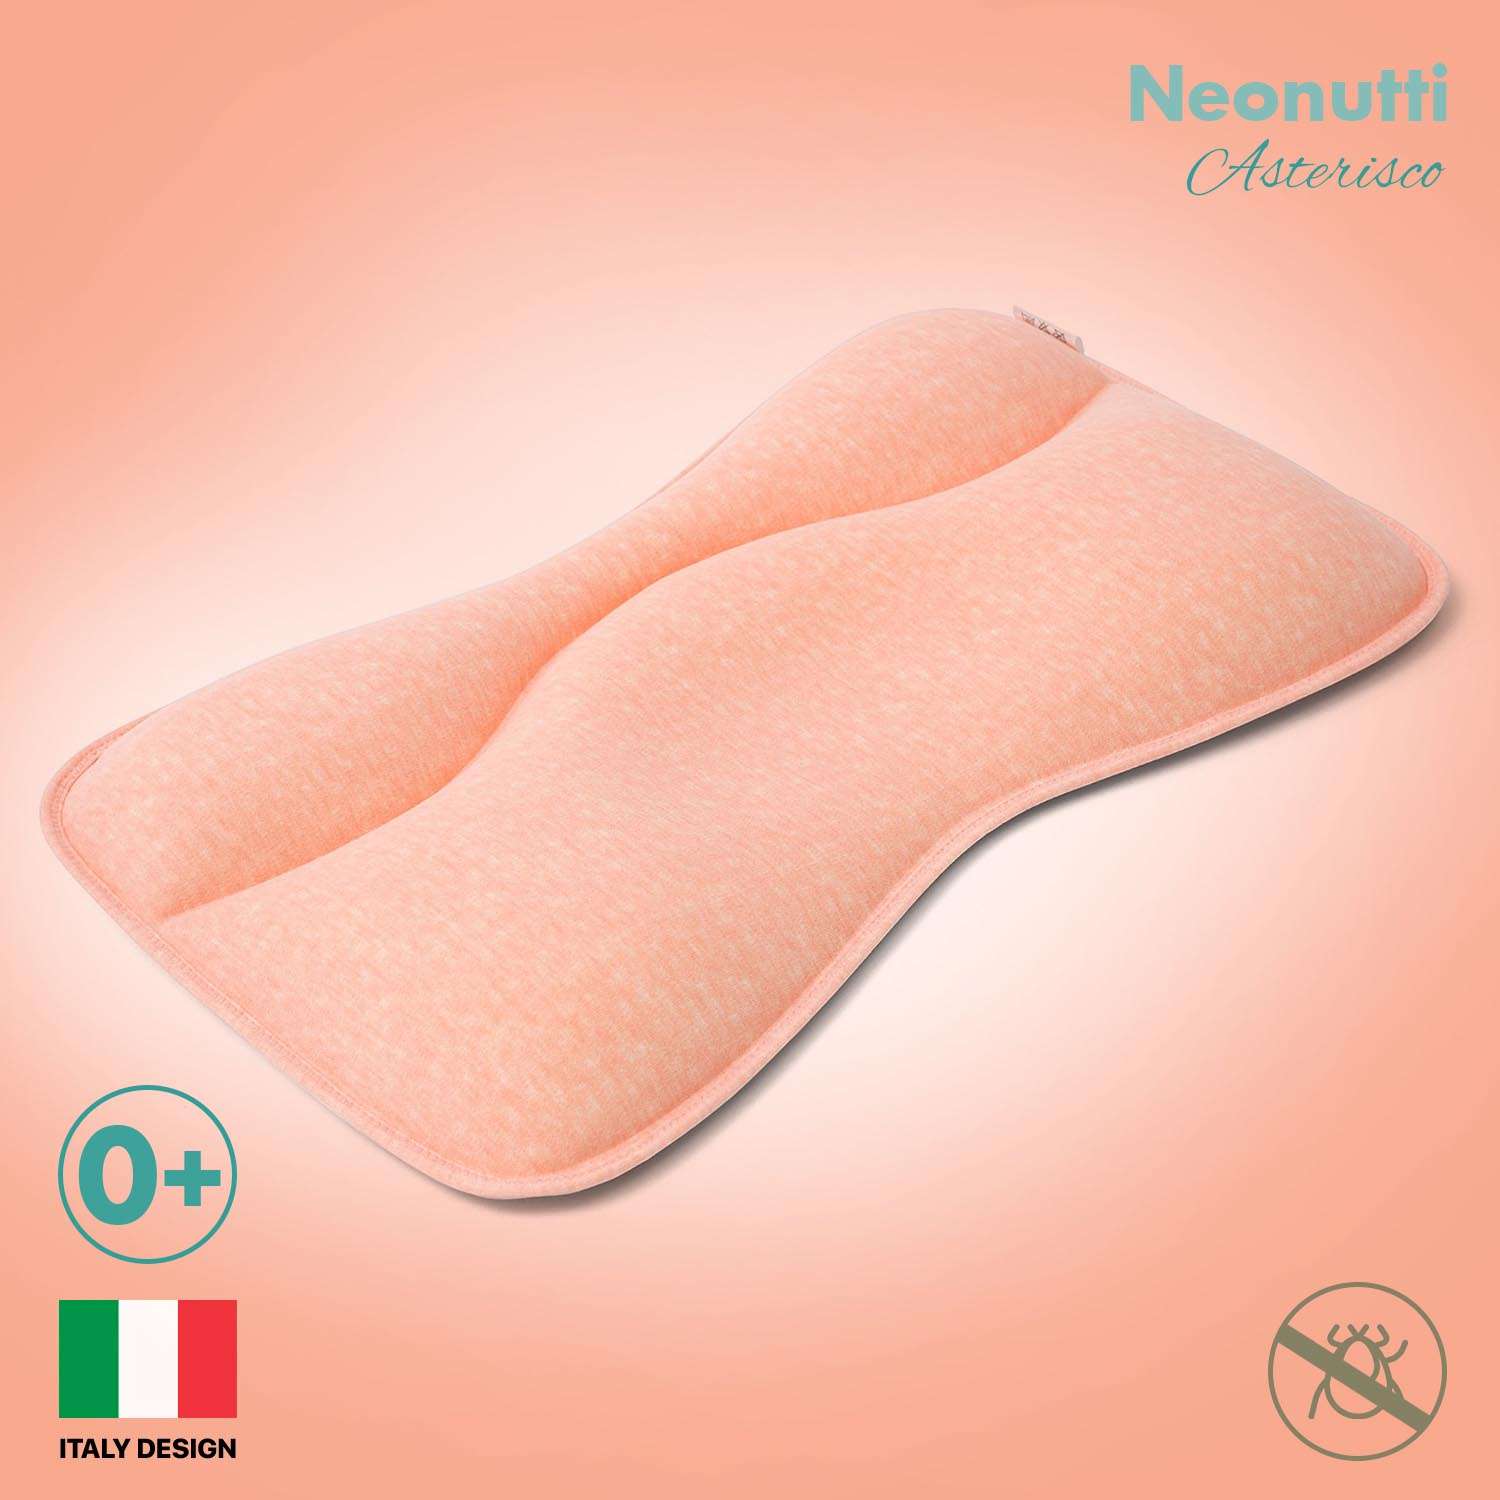 Подушка для новорожденного Nuovita Neonutti Asterisco Dipinto 07 - фото 2